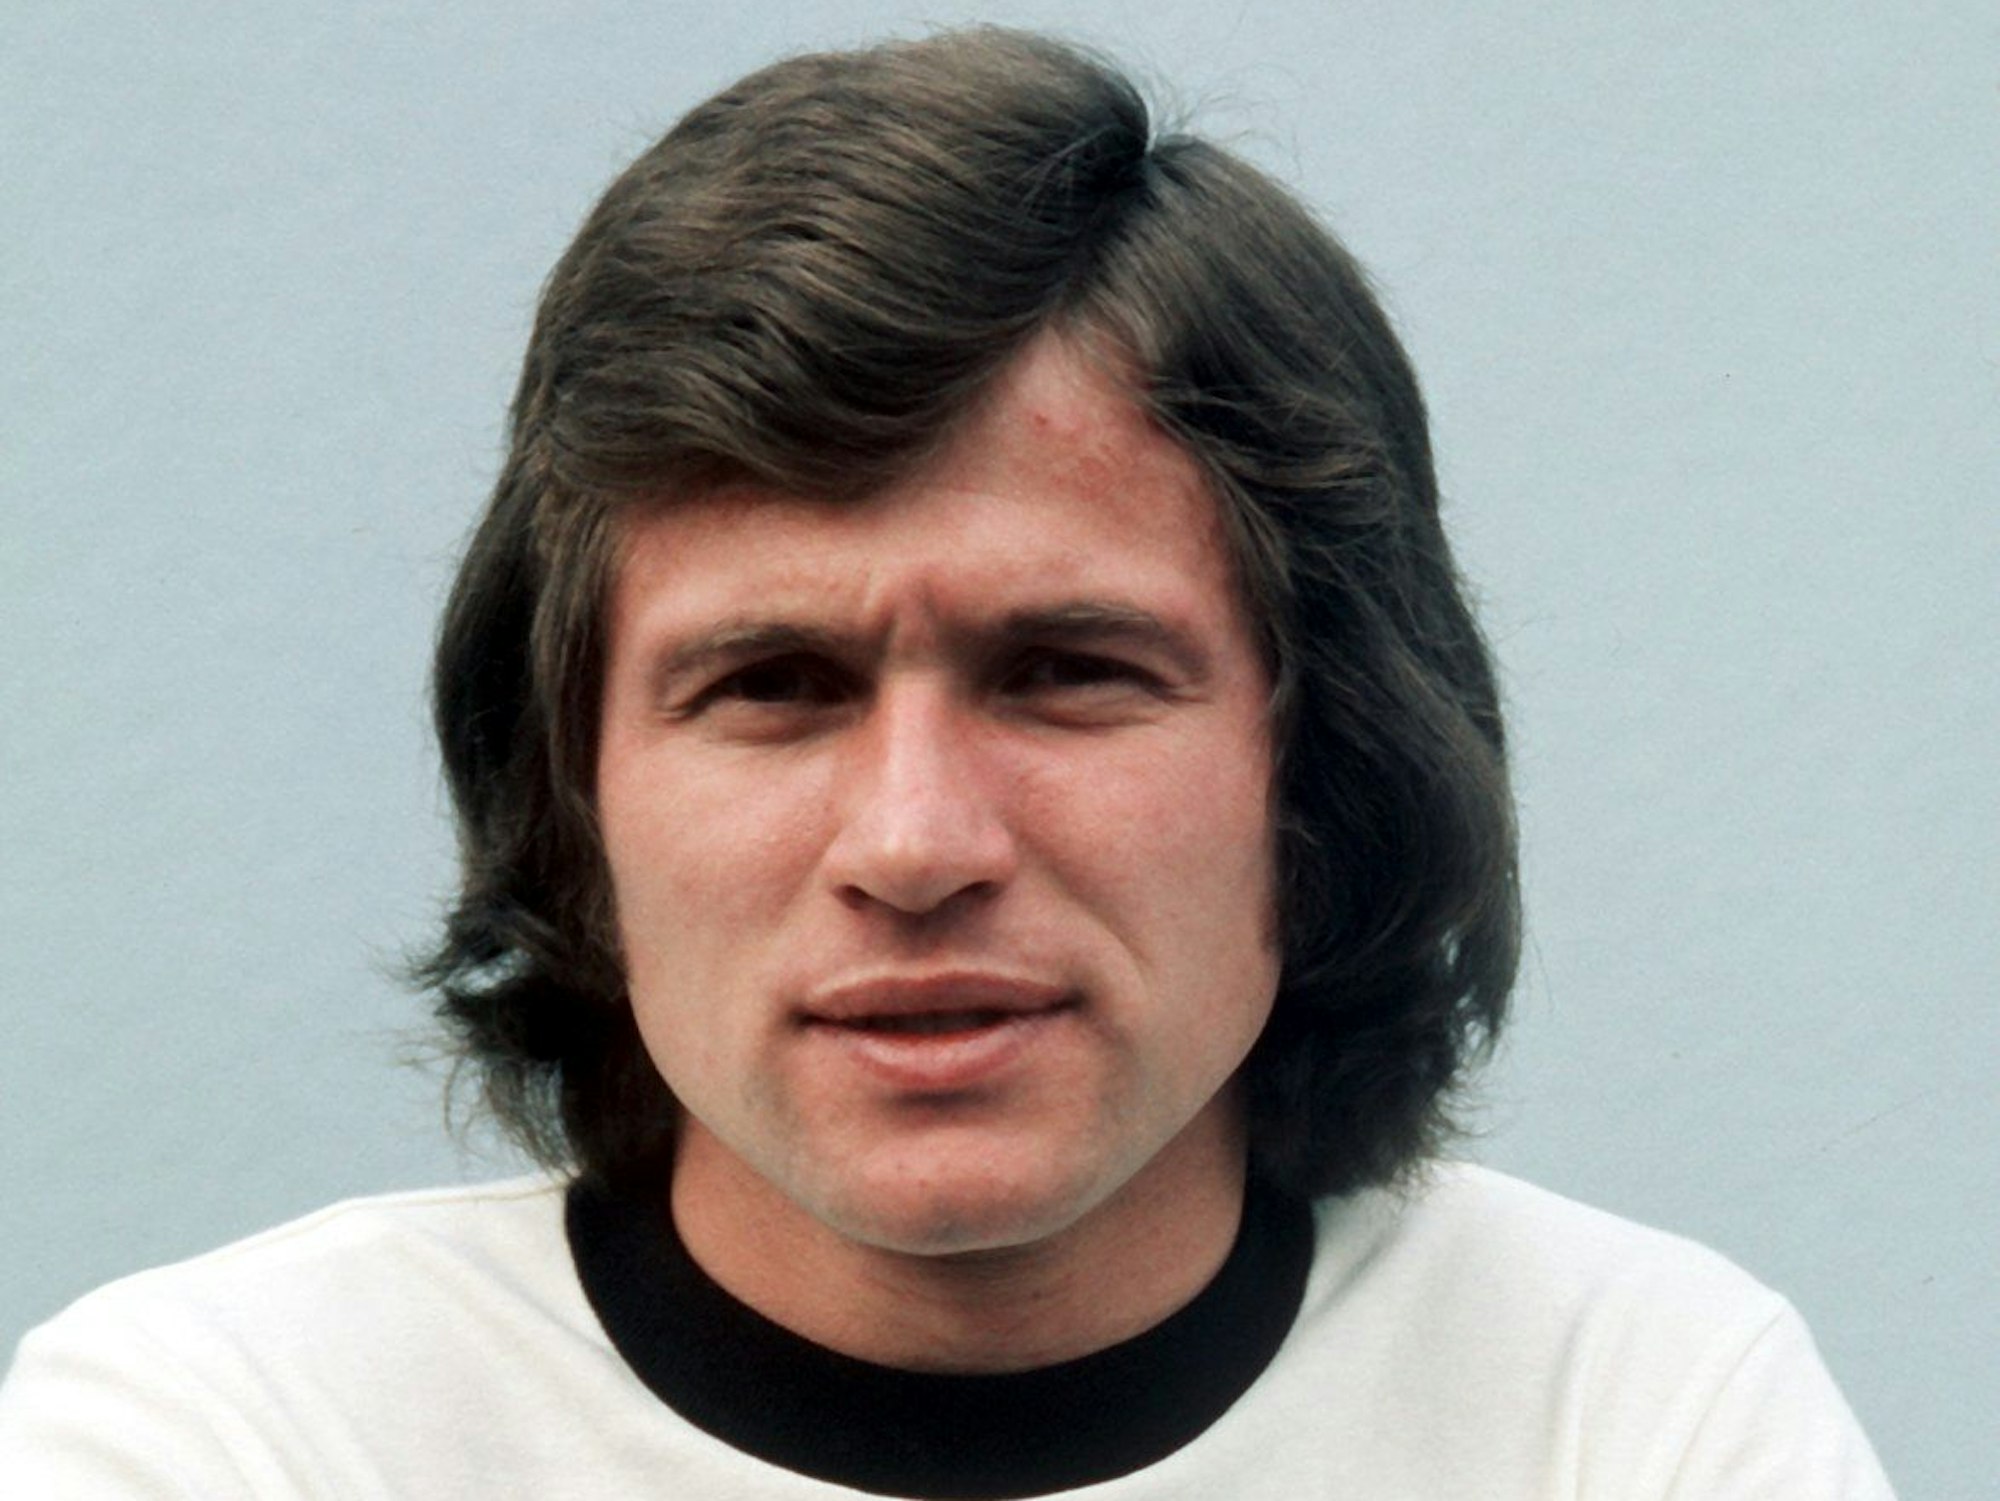 Eine Frontalaufnahme von Jupp Heynckes im Jahr 1974. Heynckes trägt ein Trikot der deutschen Nationalmannschaft.